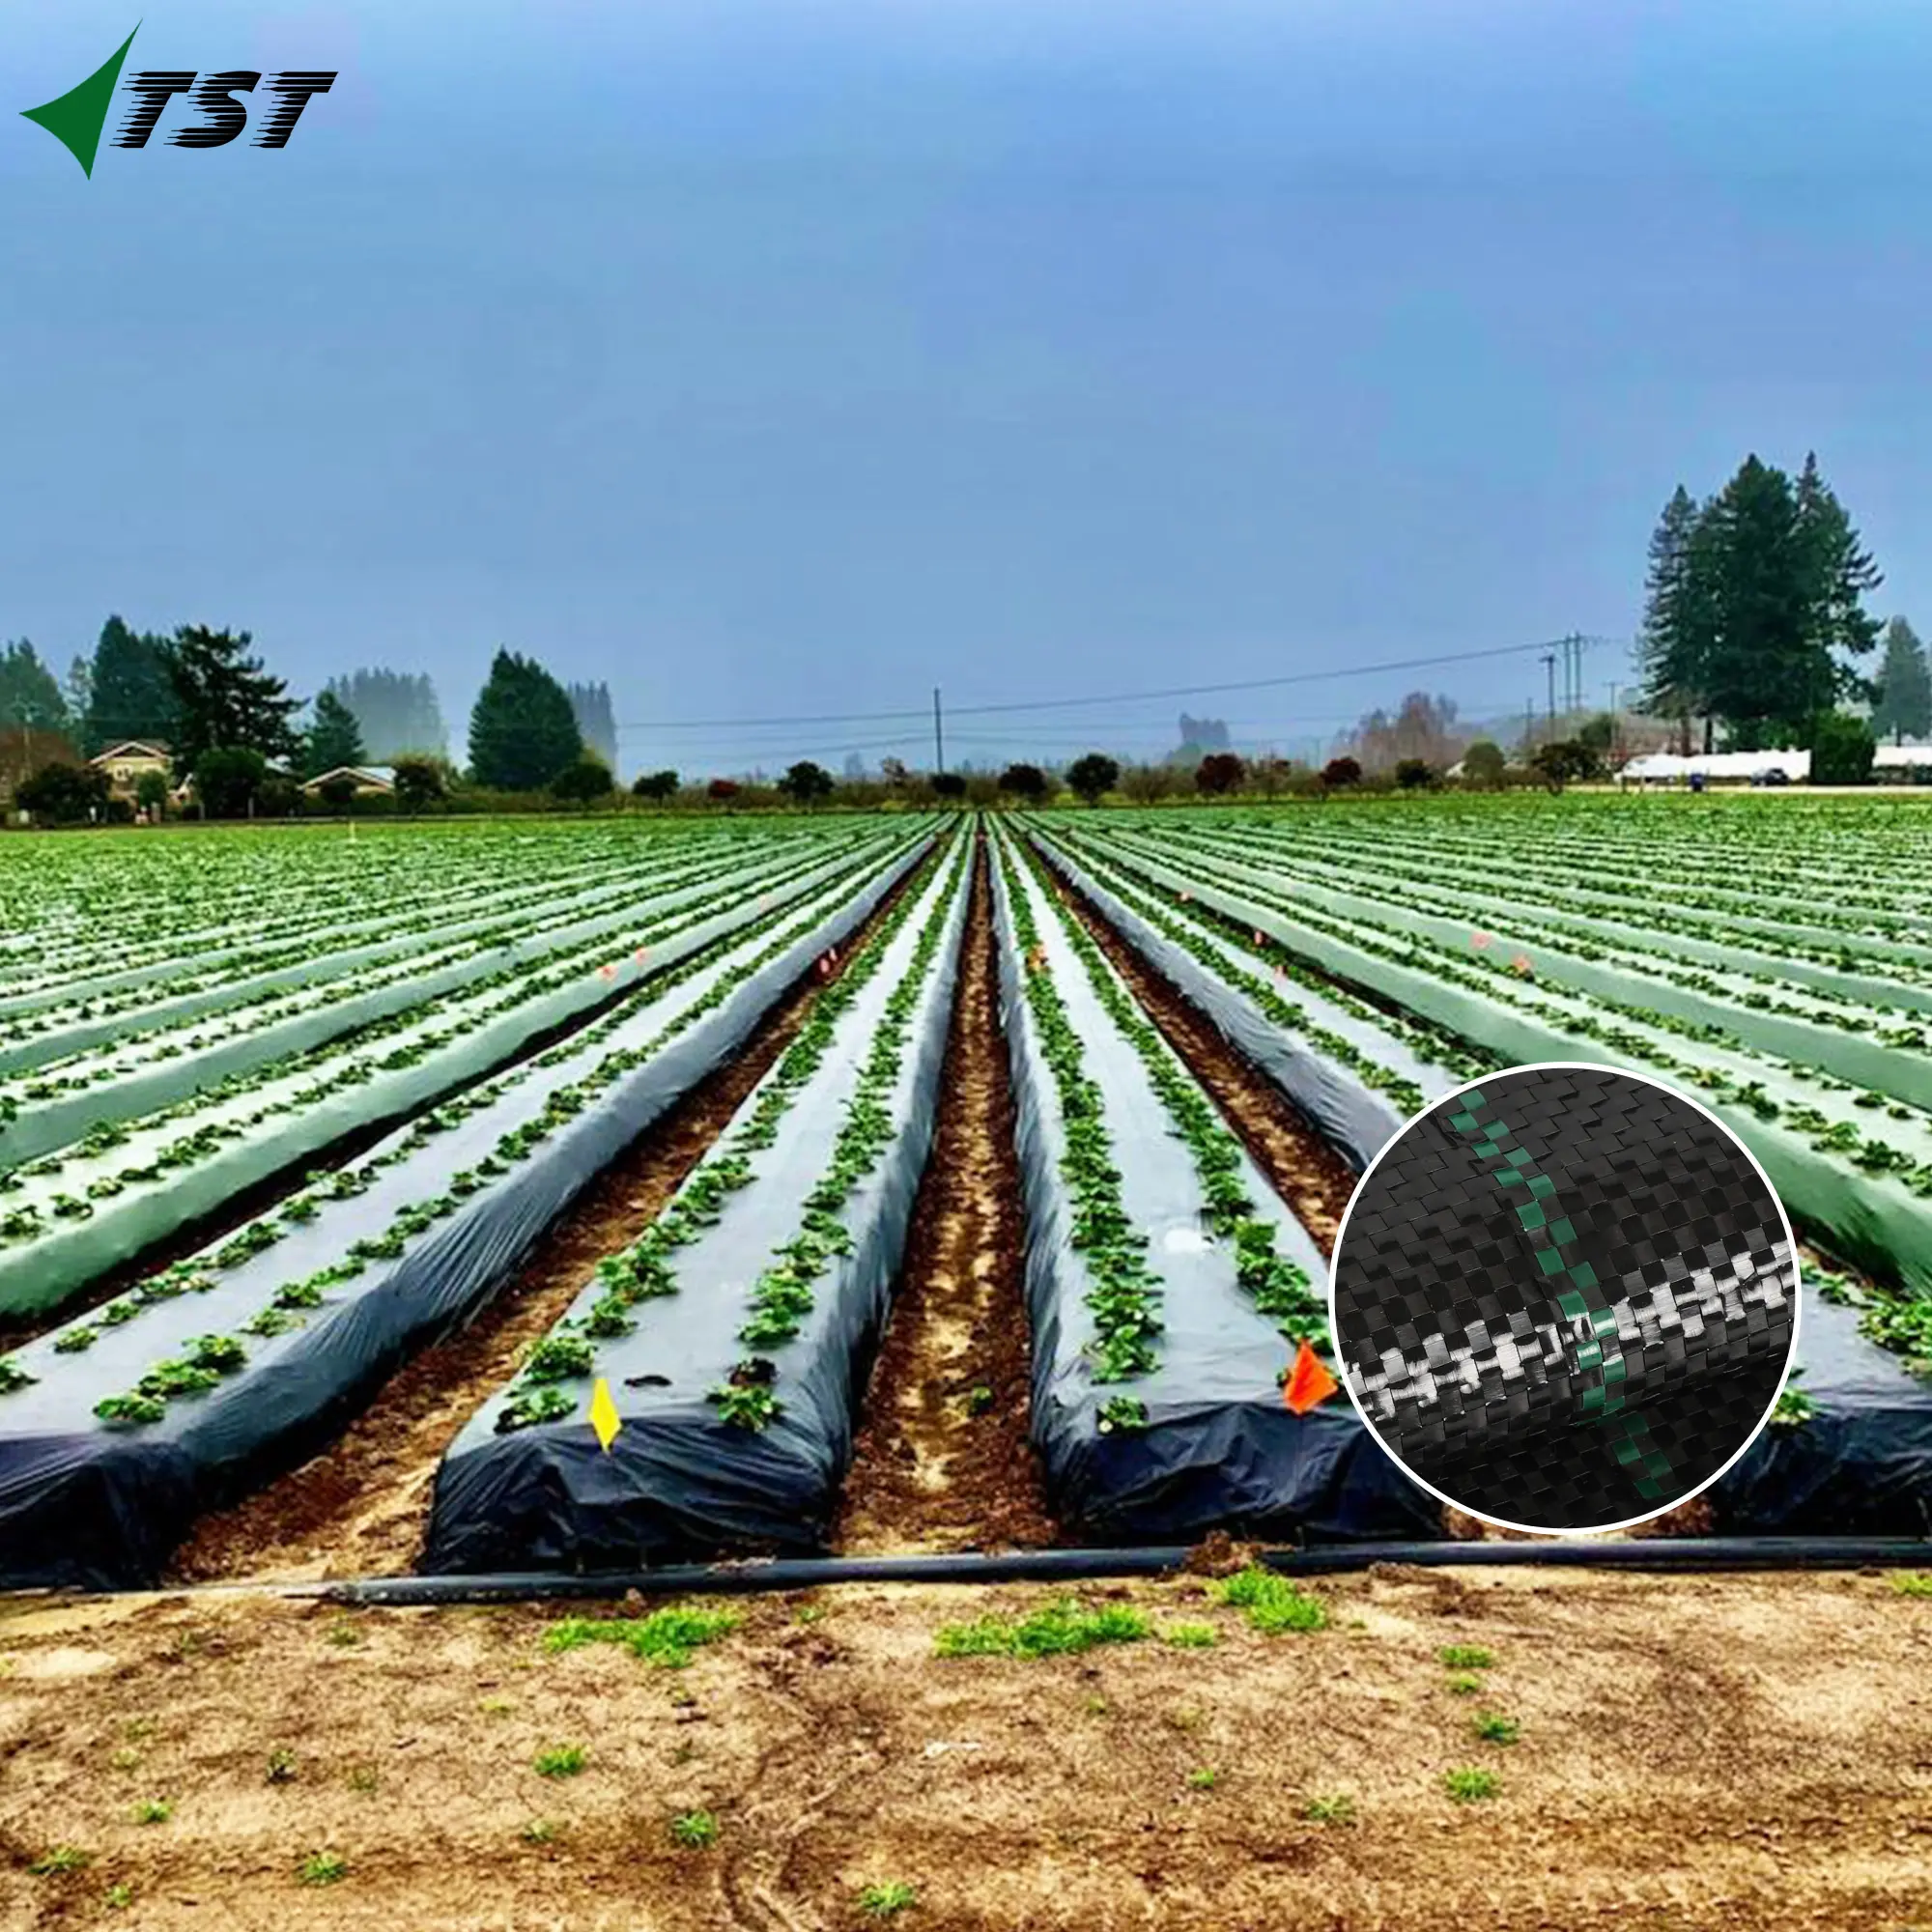 Esteras tejidas de malezas con esteras de alta calidad y colores personalizados para controlar malezas con buen efecto para la agricultura americana